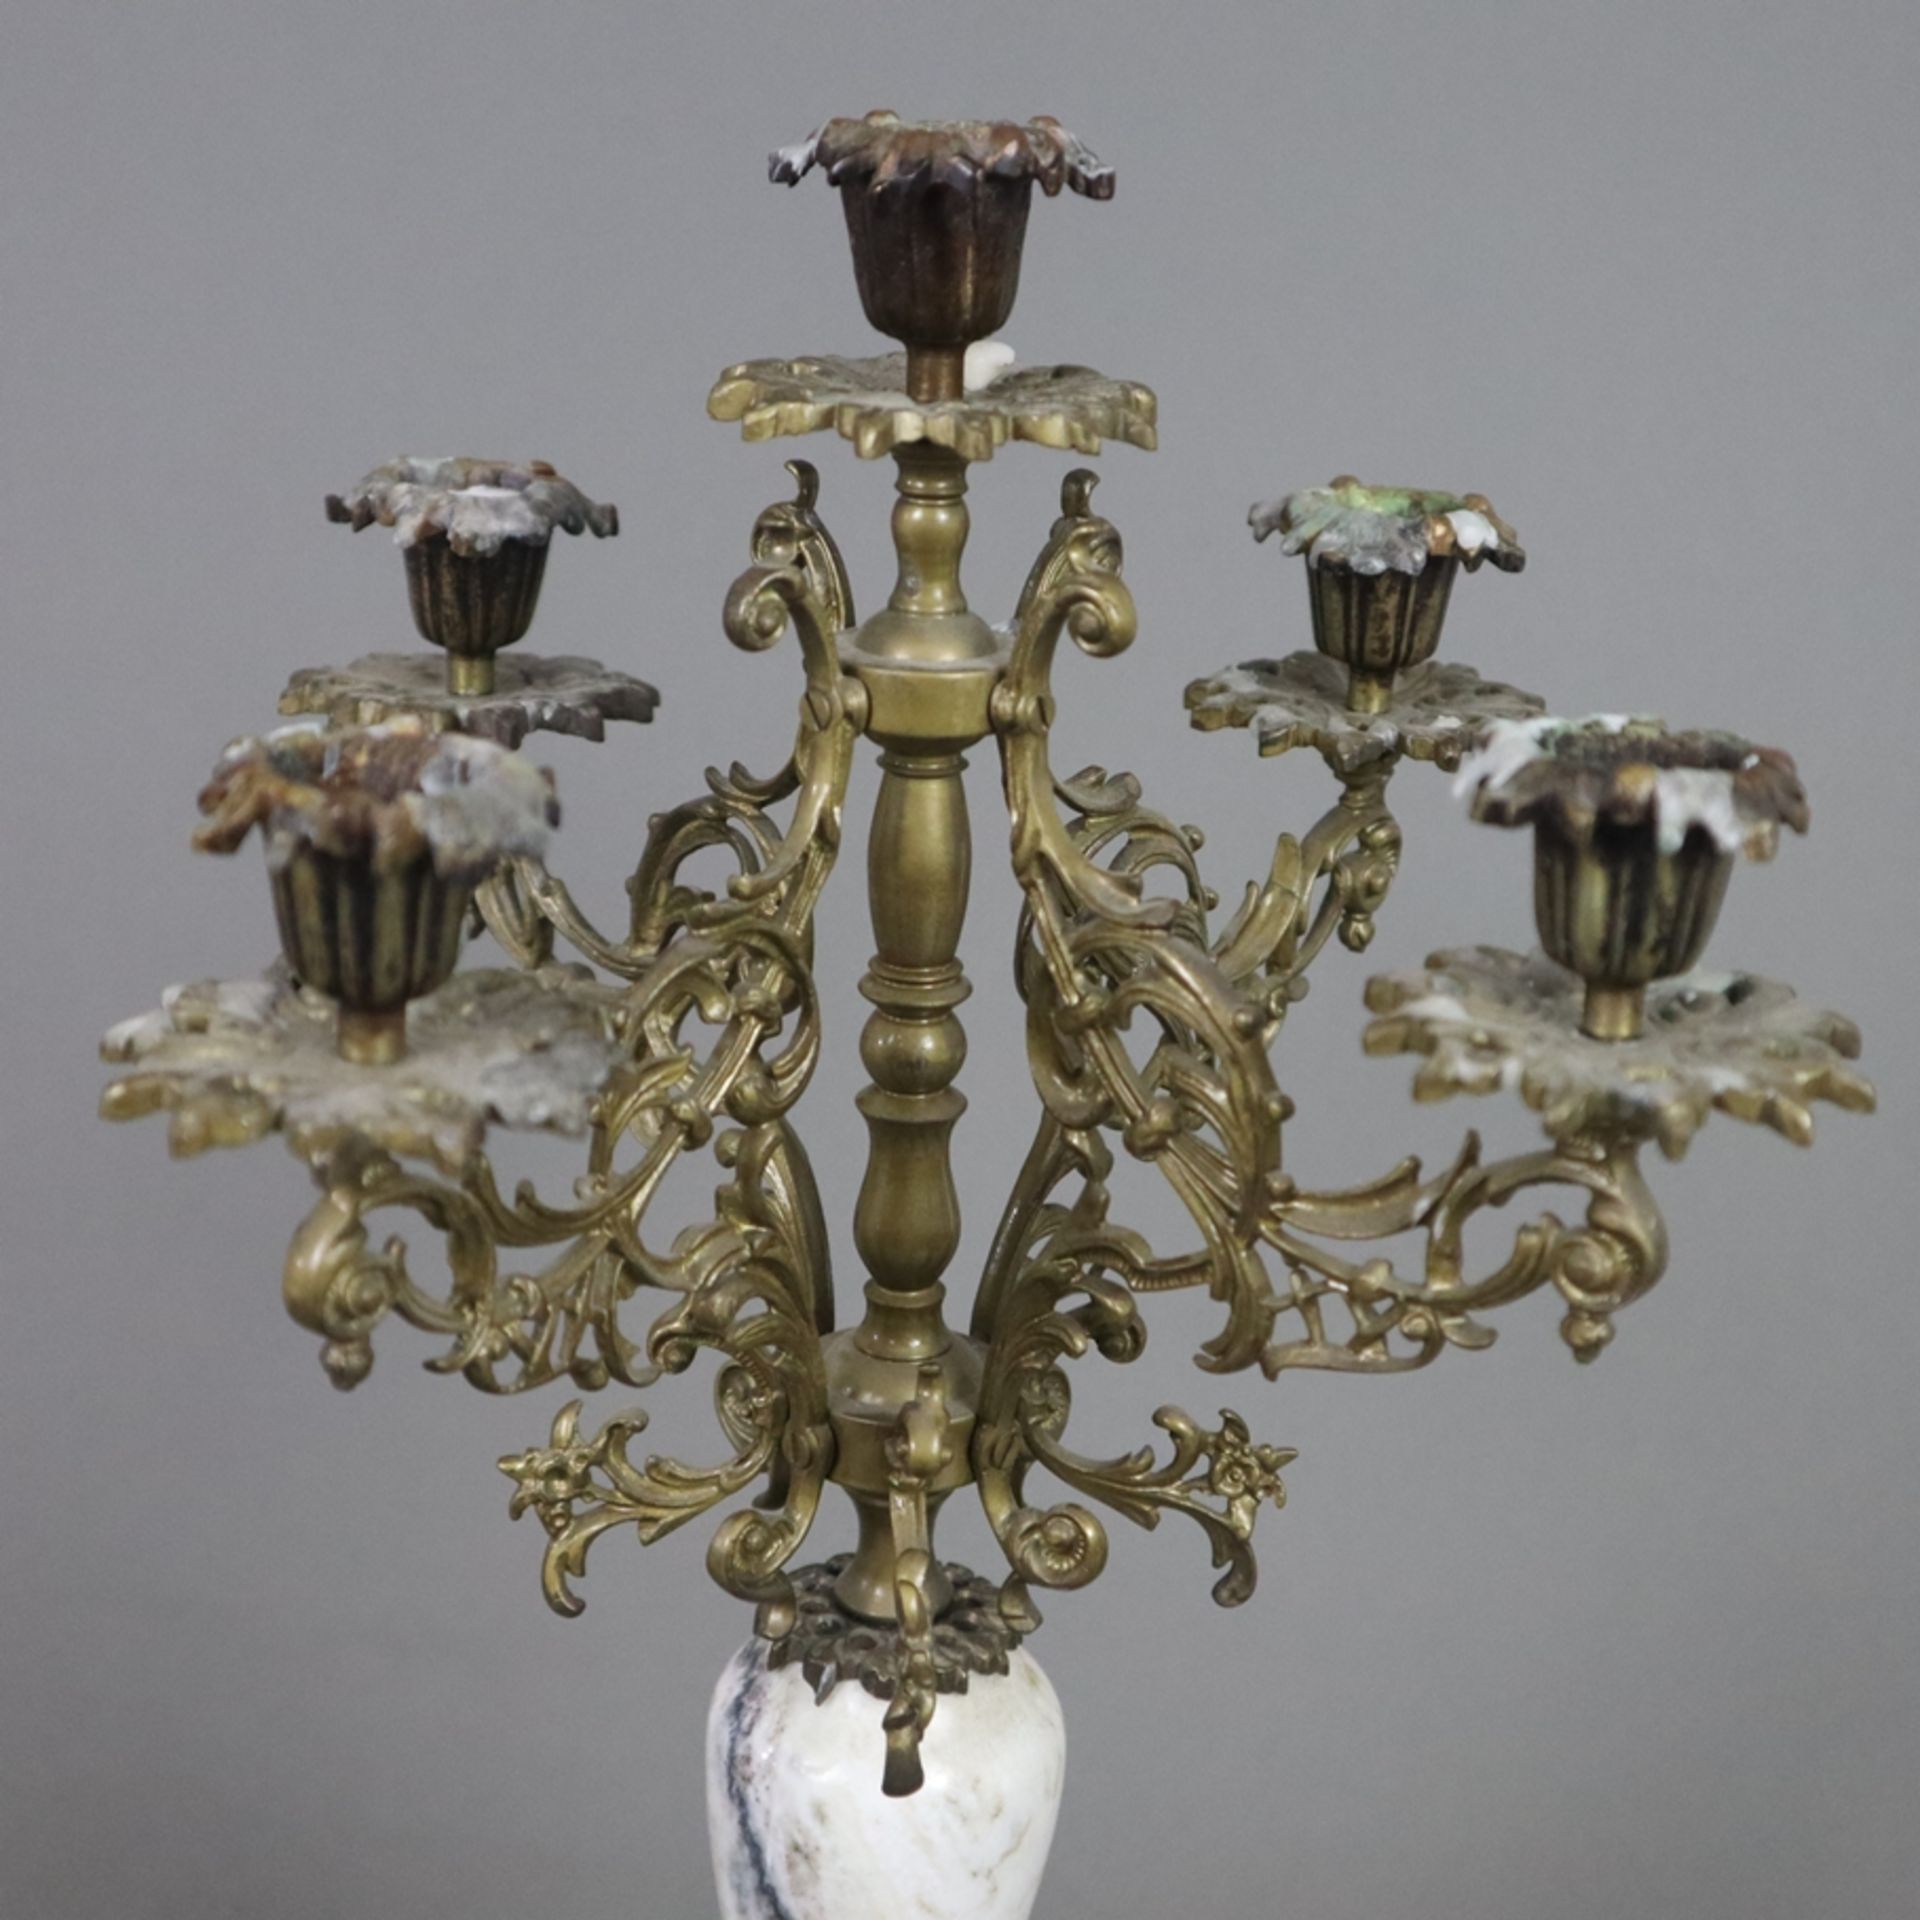 Ein Paar Girandolen - Bronze/ Metall/ geäderter Marmor, vierfüßiger, gestufter Sockel, mittig Marmo - Bild 2 aus 7